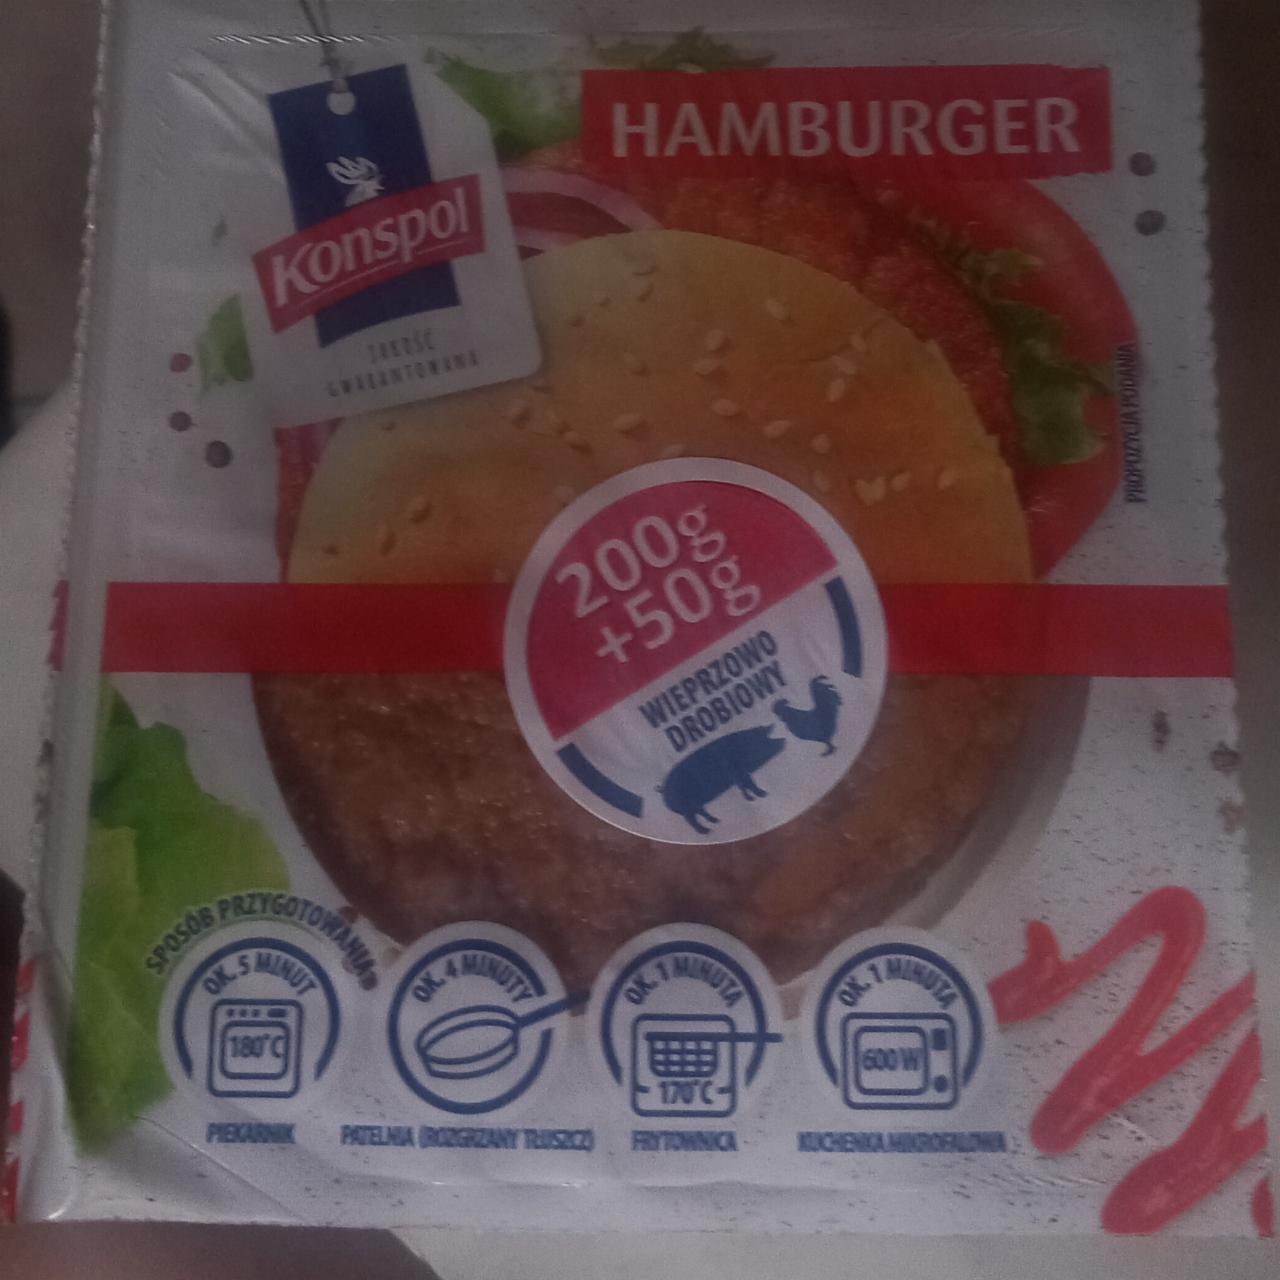 Zdjęcia - Hamburger drobiowo wieprzowy Konspol